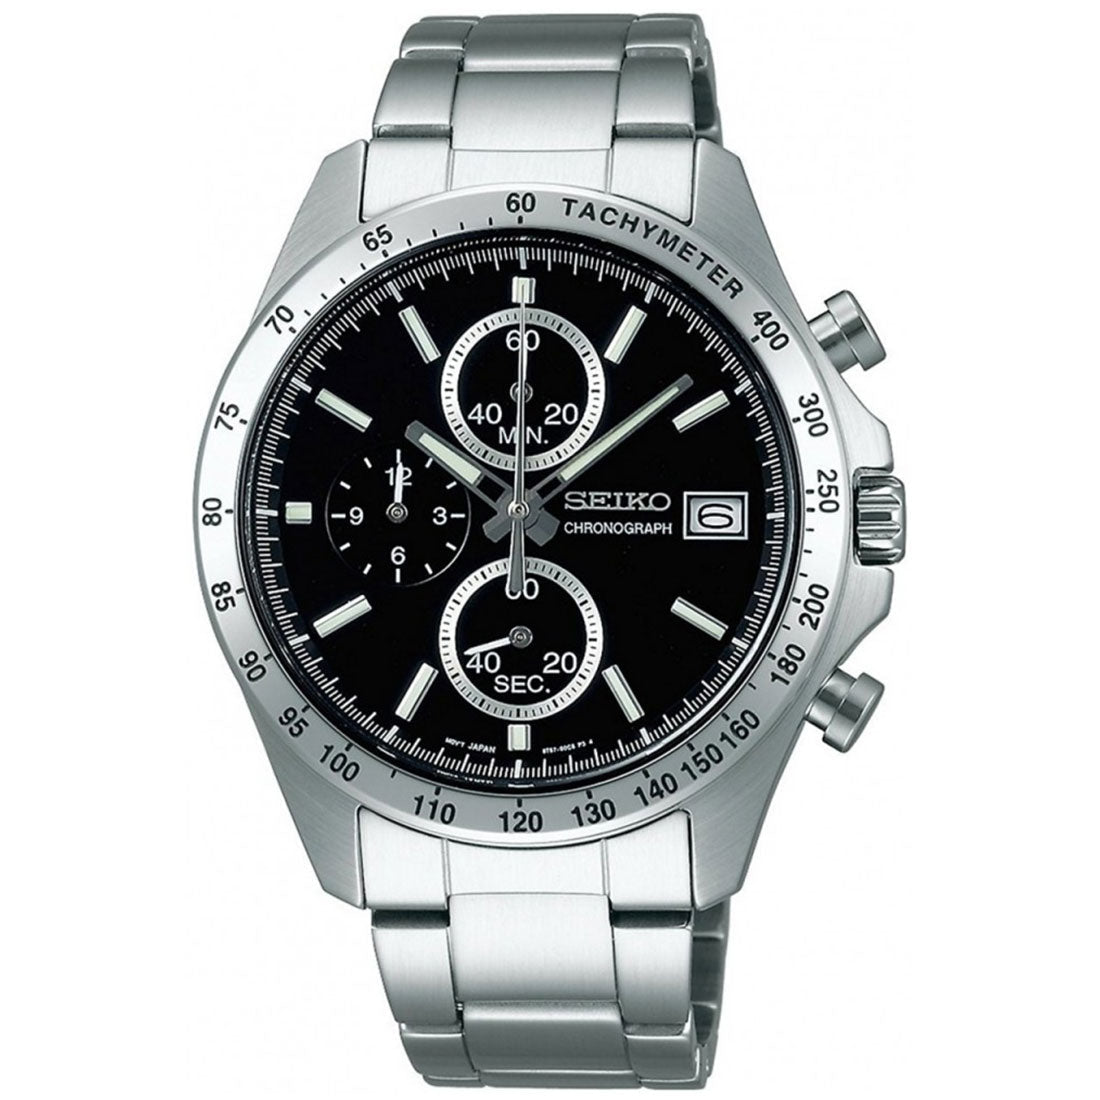 Seiko Spirit JDM Selection Chronograph SBTR005 Black Dial Quartz Stainless Steel Watch -Seiko